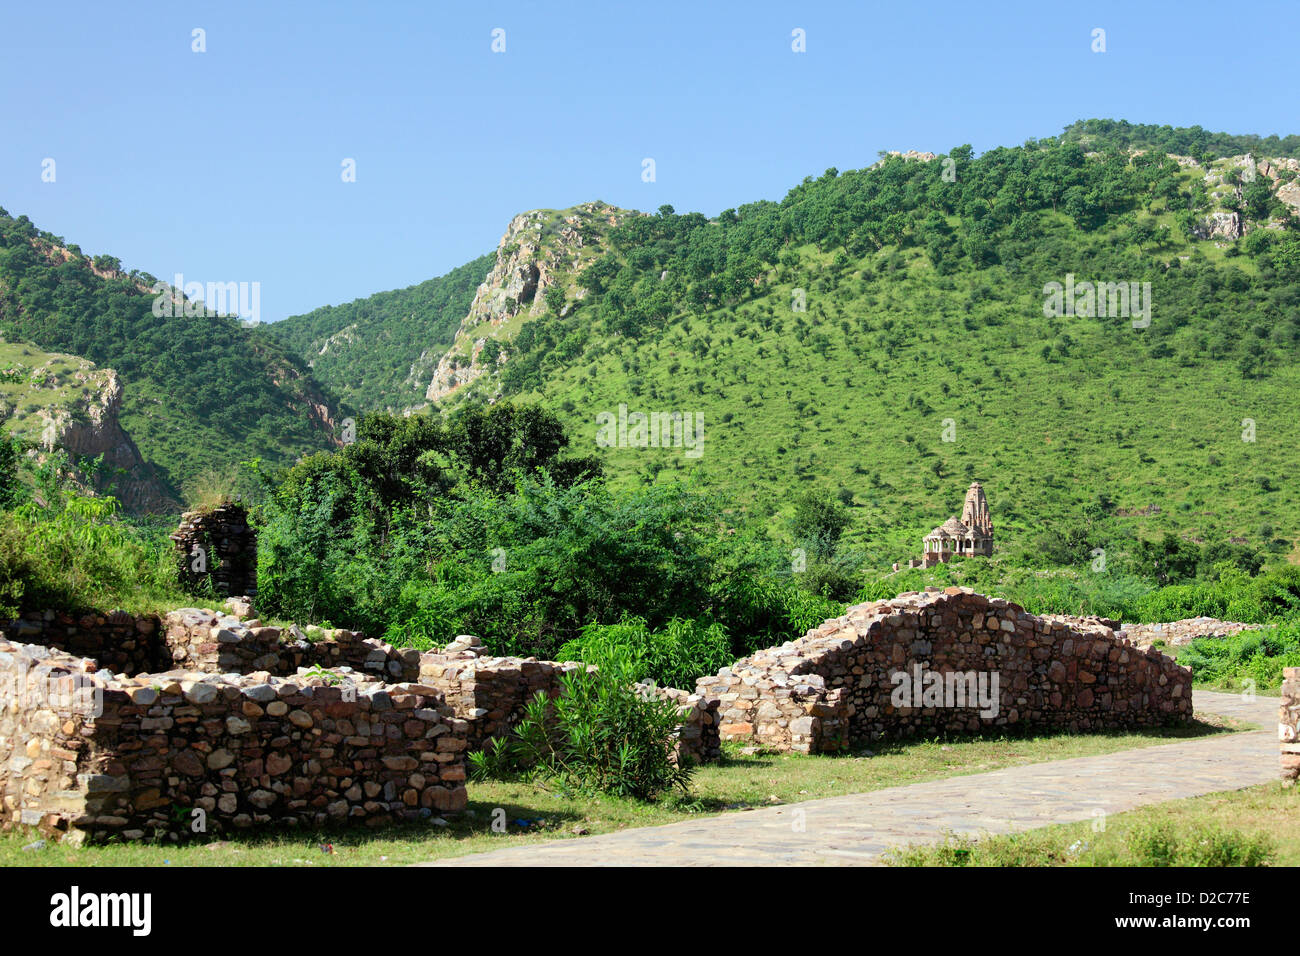 Ancien Site Bhangarh, Ruines de Bhangarh, Temple de Bhangarh Bhangarh, Rajasthan, Inde Banque D'Images